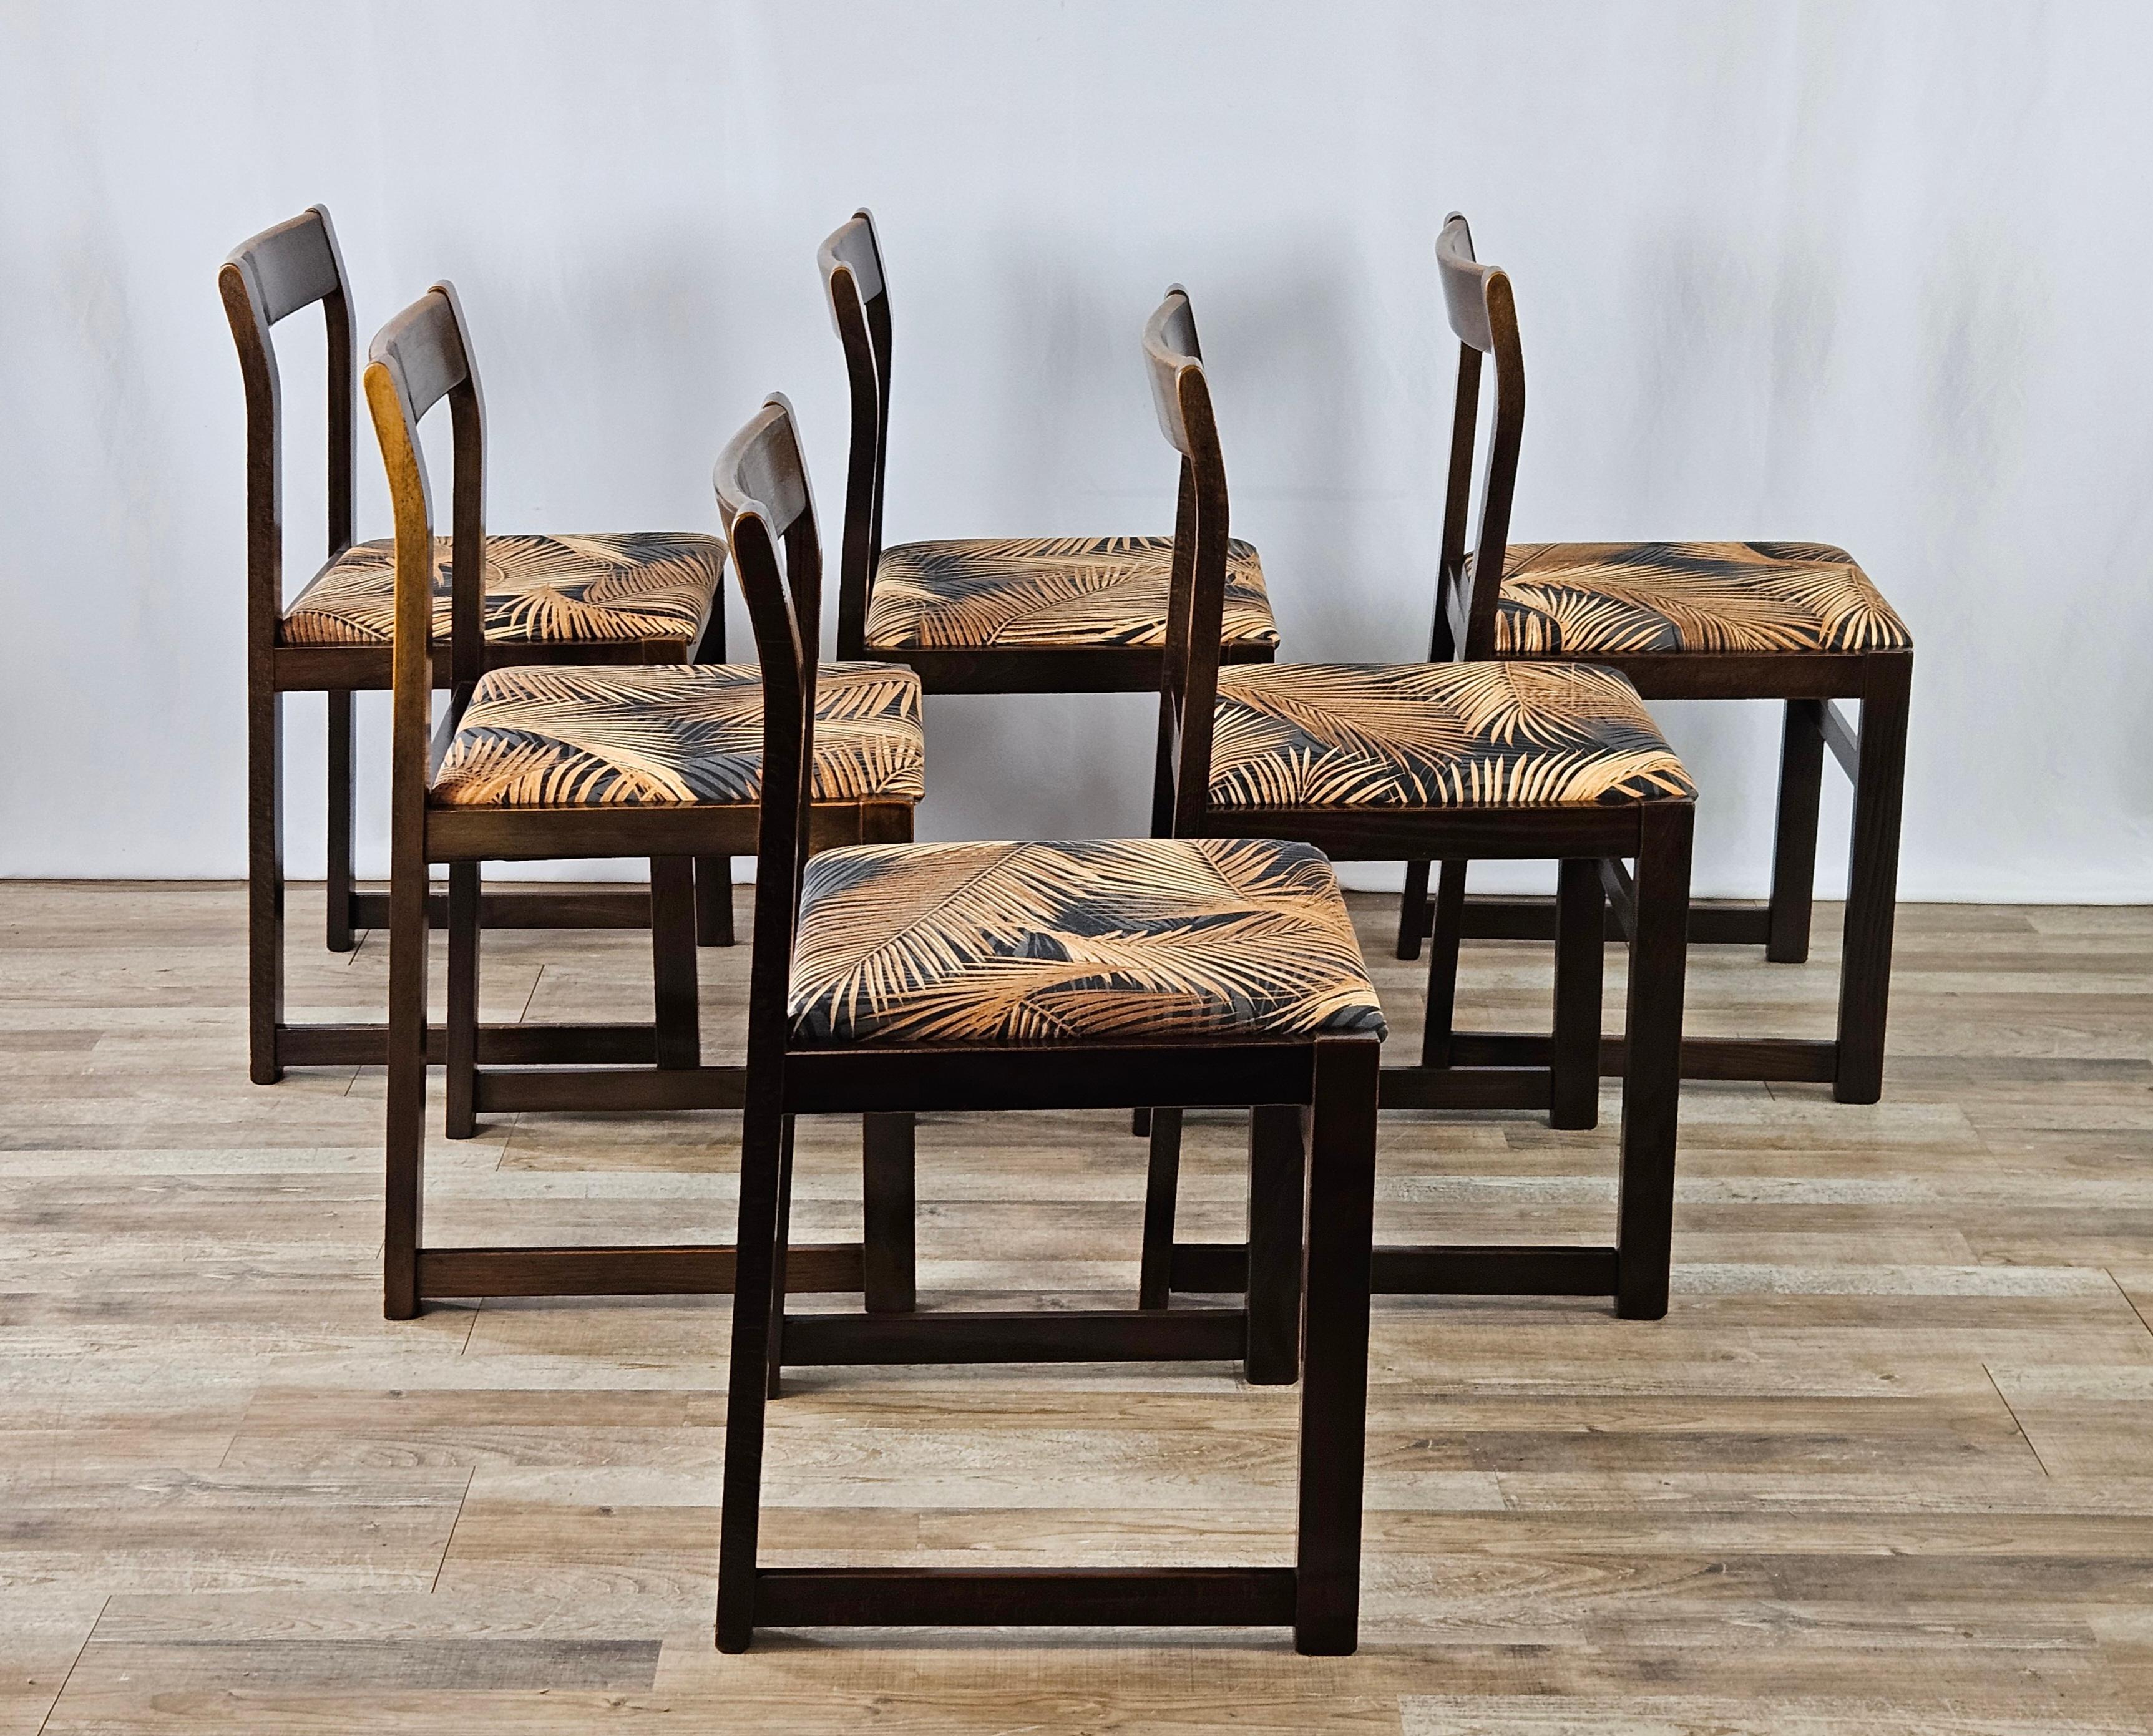 Set di sedie di produzione italiana dei primi anni '70 circa, pronte all'uso e indicate principalmente in cucina oppure possono essere usate come elementi d'arredo e design in altri ambienti.

Le sedie hanno struttura in legno, le sedute sono appena